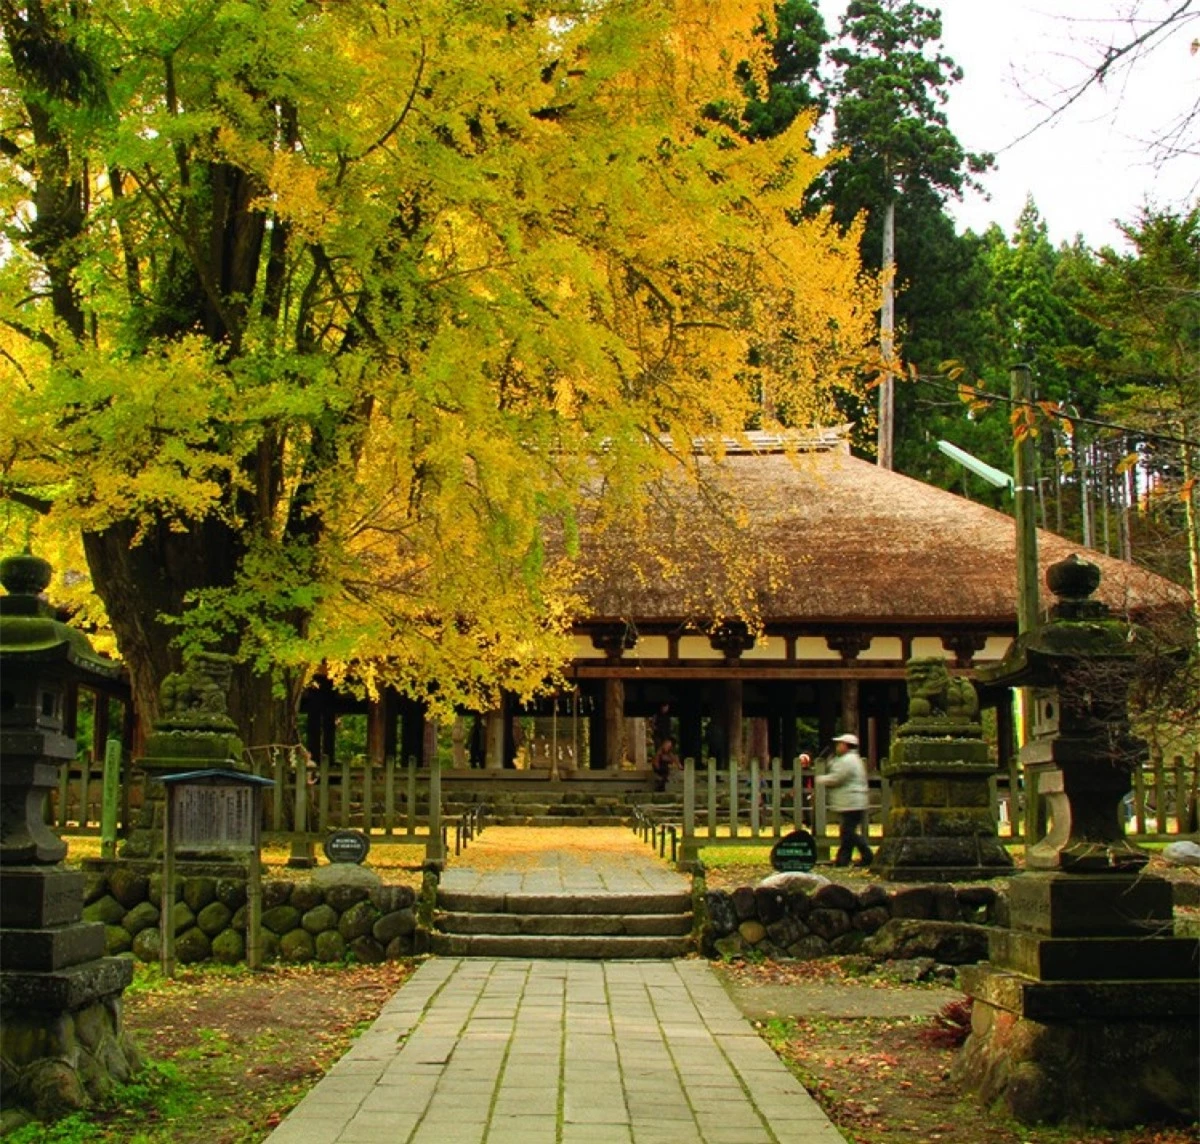 Đền Shingu Kumano được coi là tài sản văn hóa quan trọng của Nhật Bản. Được xây dựng từ thời kỳ Heian, kiến trúc của ngôi đền có những thay đổi theo thời gian. Ngày nay, du khách có thể tham quan những di sản văn hóa của Fukushima và Nhật Bản được lưu giữ tại đây. Ngoài ra, trong khuôn viên ngôi đền còn có một cây bạch quả cổ thụ 800 tuổi, mỗi mùa thu đến, lá cây đổi màu nhuộm vàng cả không gian xung quanh.